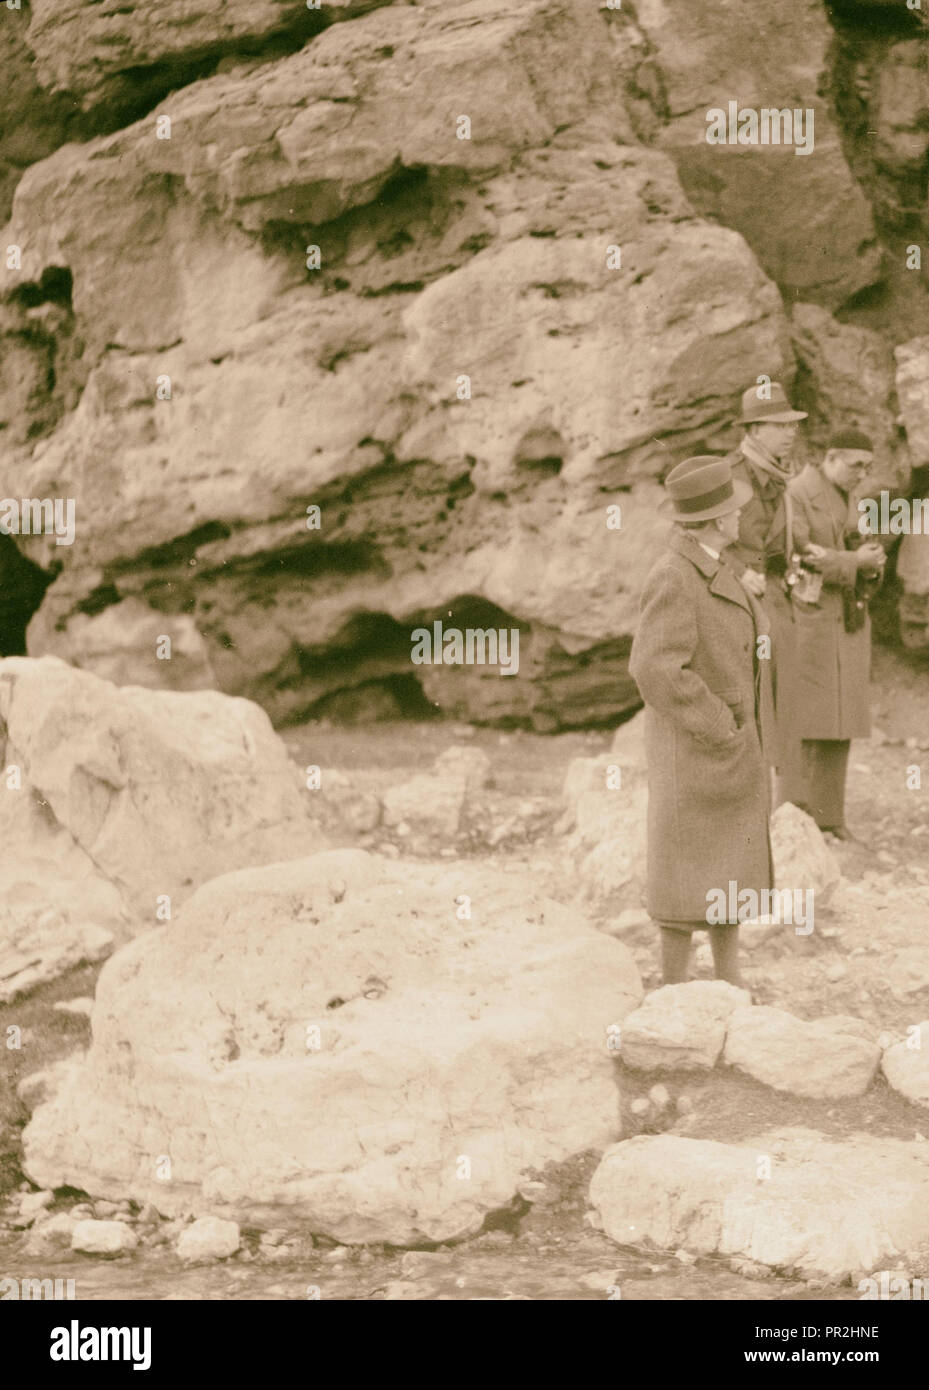 Gustaf Adolf, Prince héritier de Suède probablement à Pétra, en Jordanie. 1910, Jordanie, Petra, la ville disparue Banque D'Images